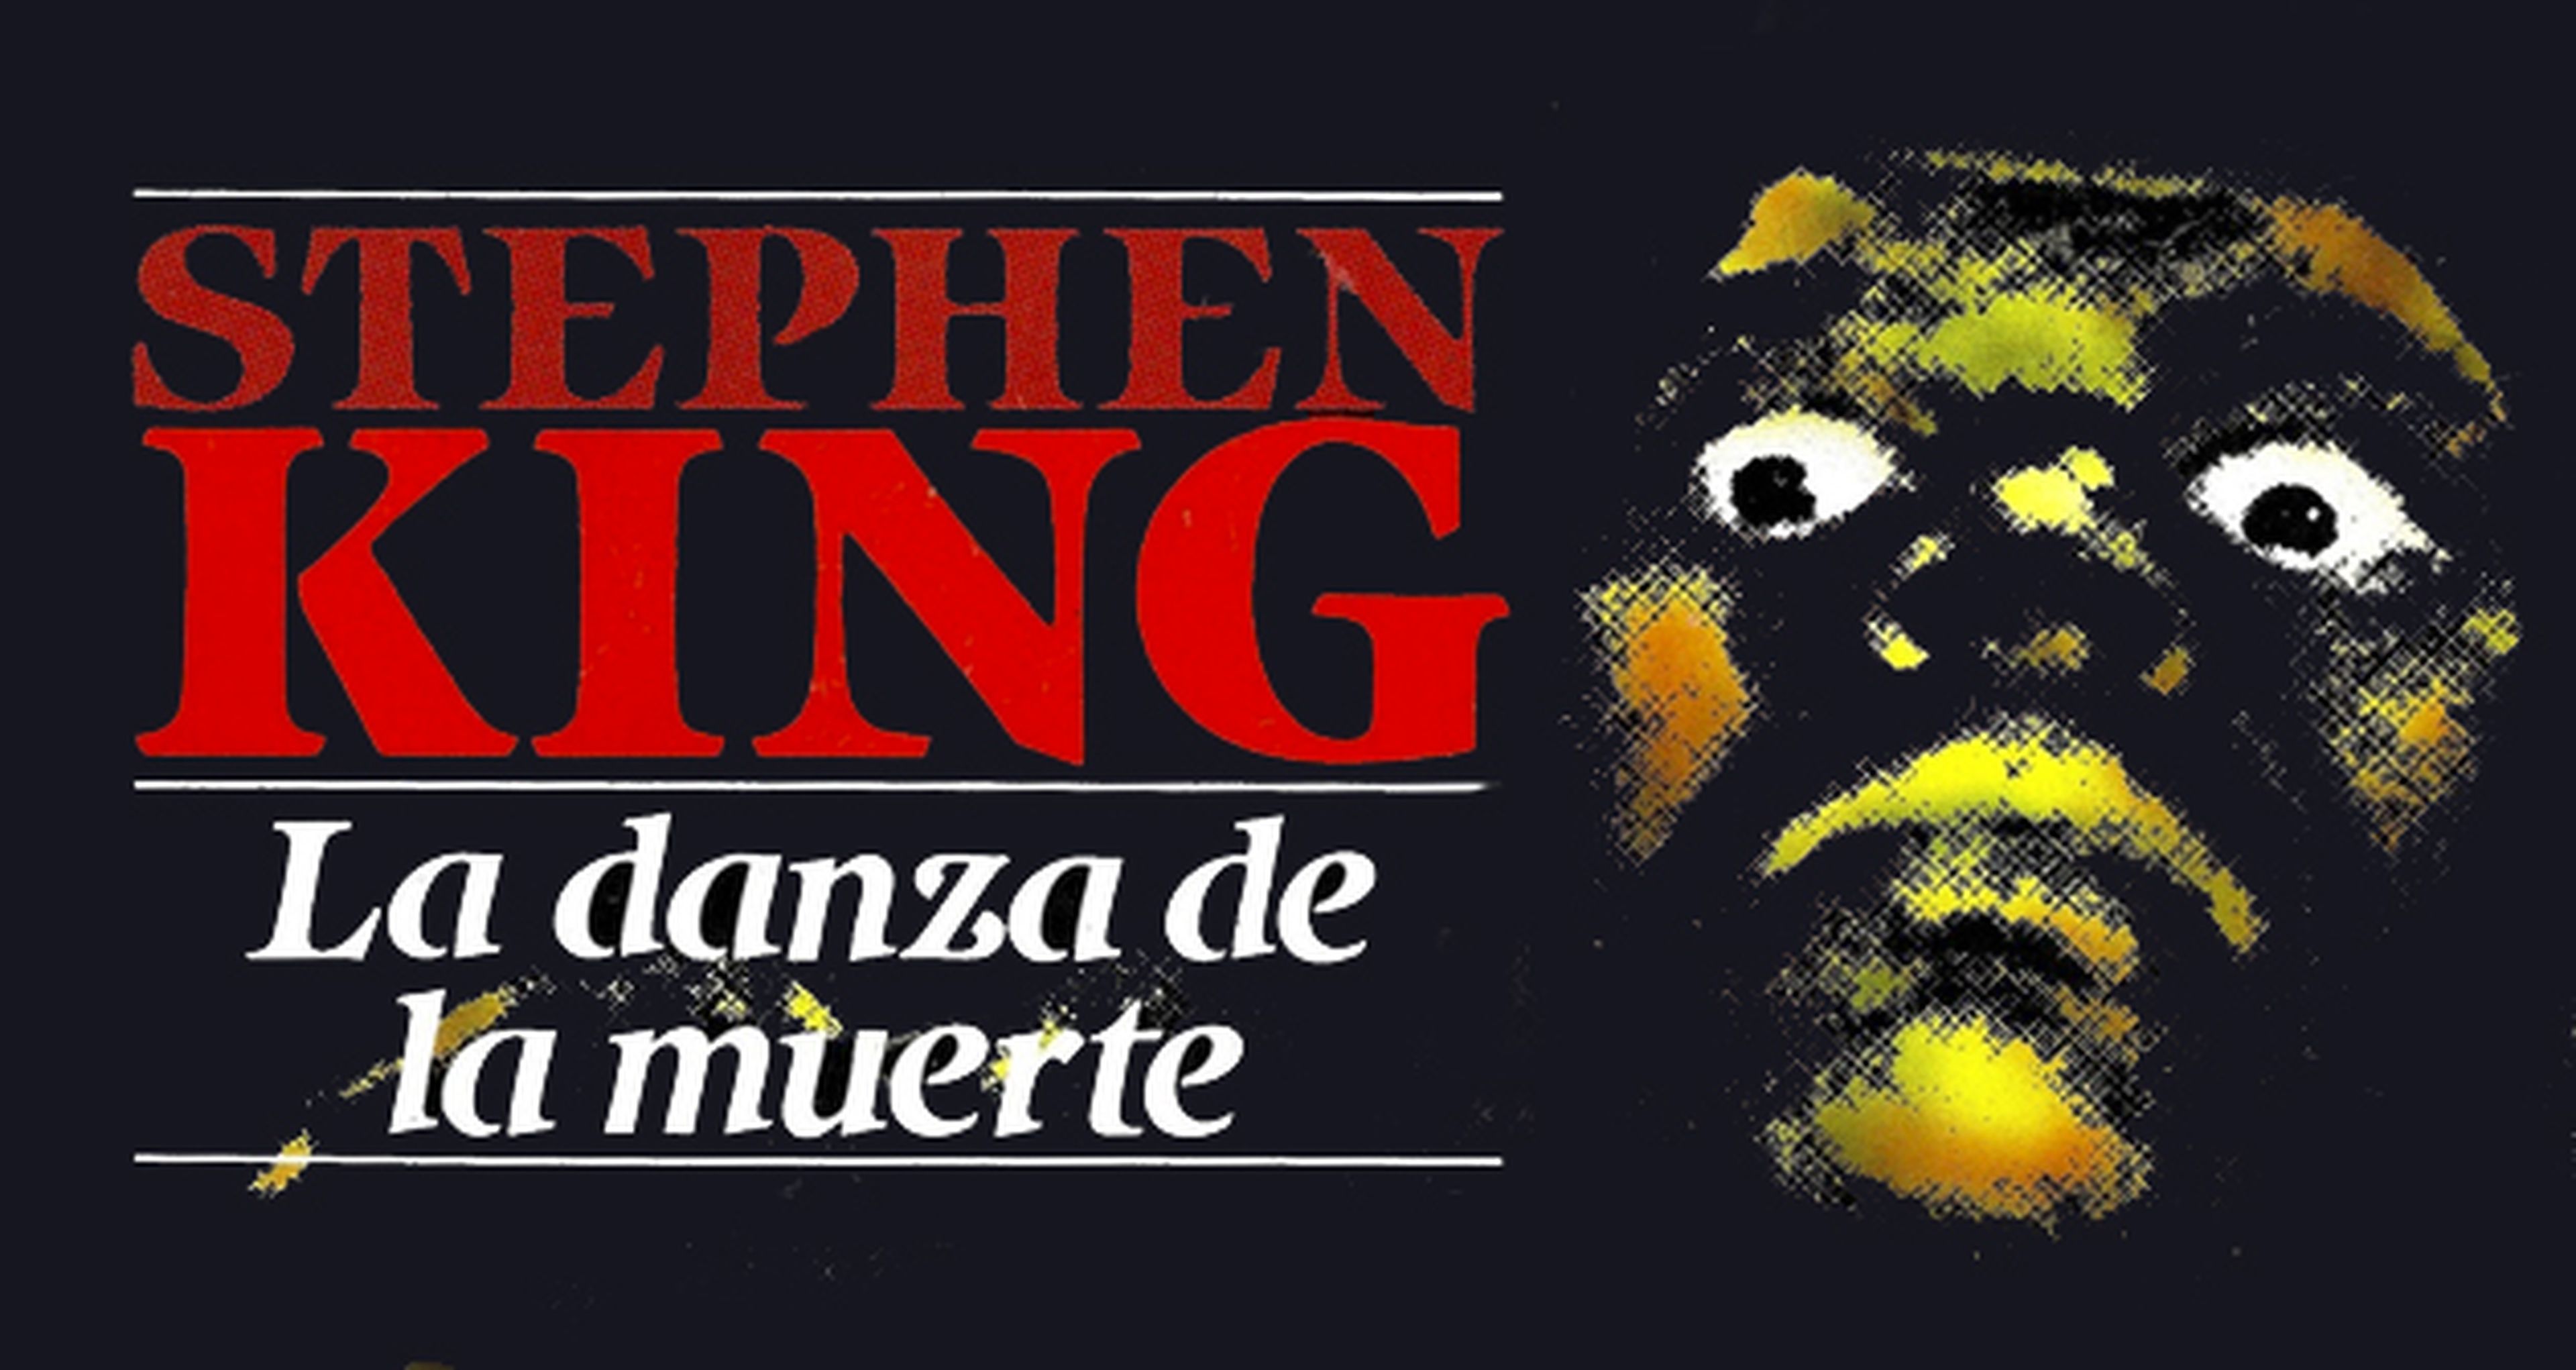 La danza de la muerte de Stephen King se parcelará en cuatro películas